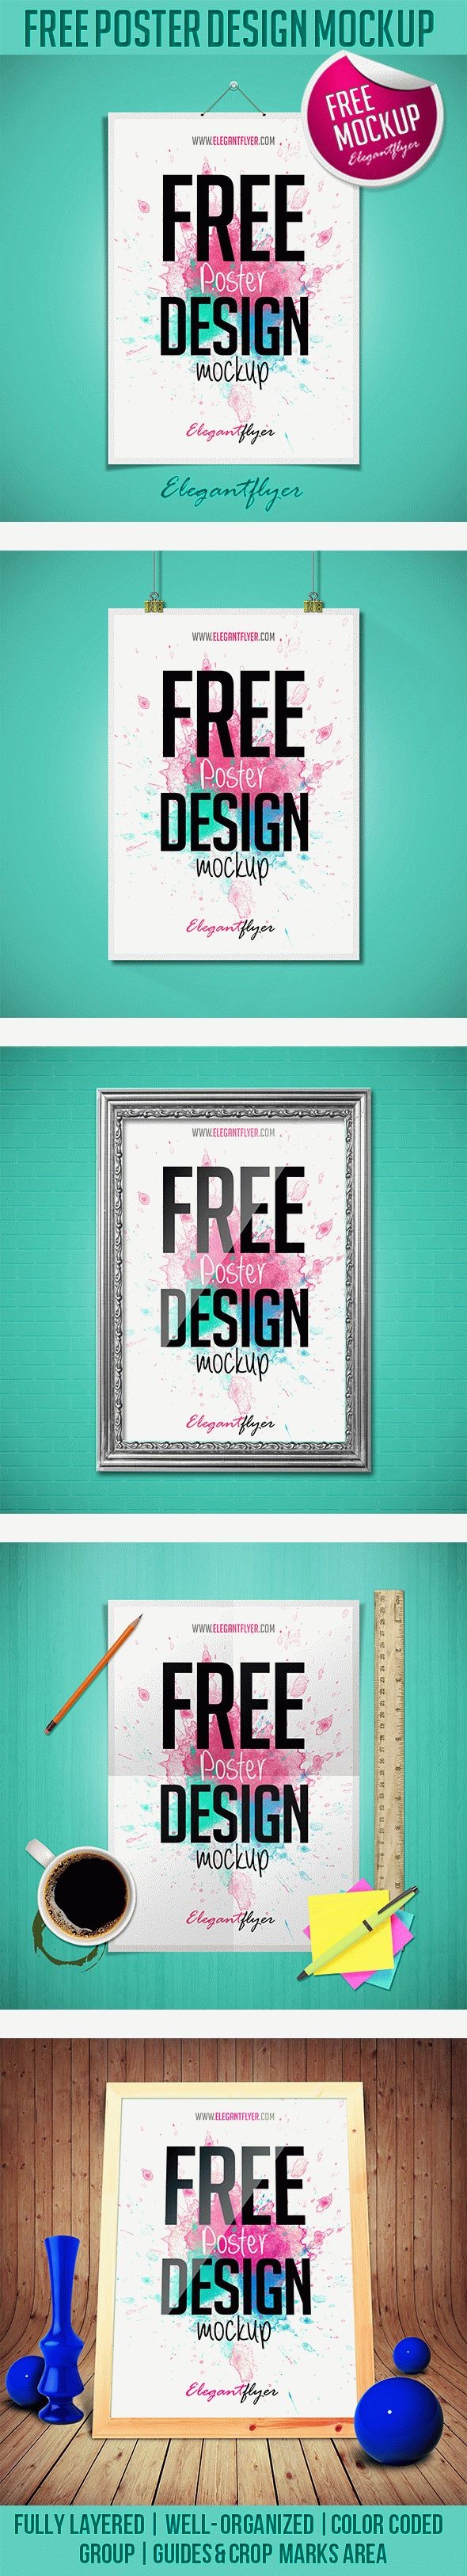 Mockup gratuito de design de pôster. by ElegantFlyer